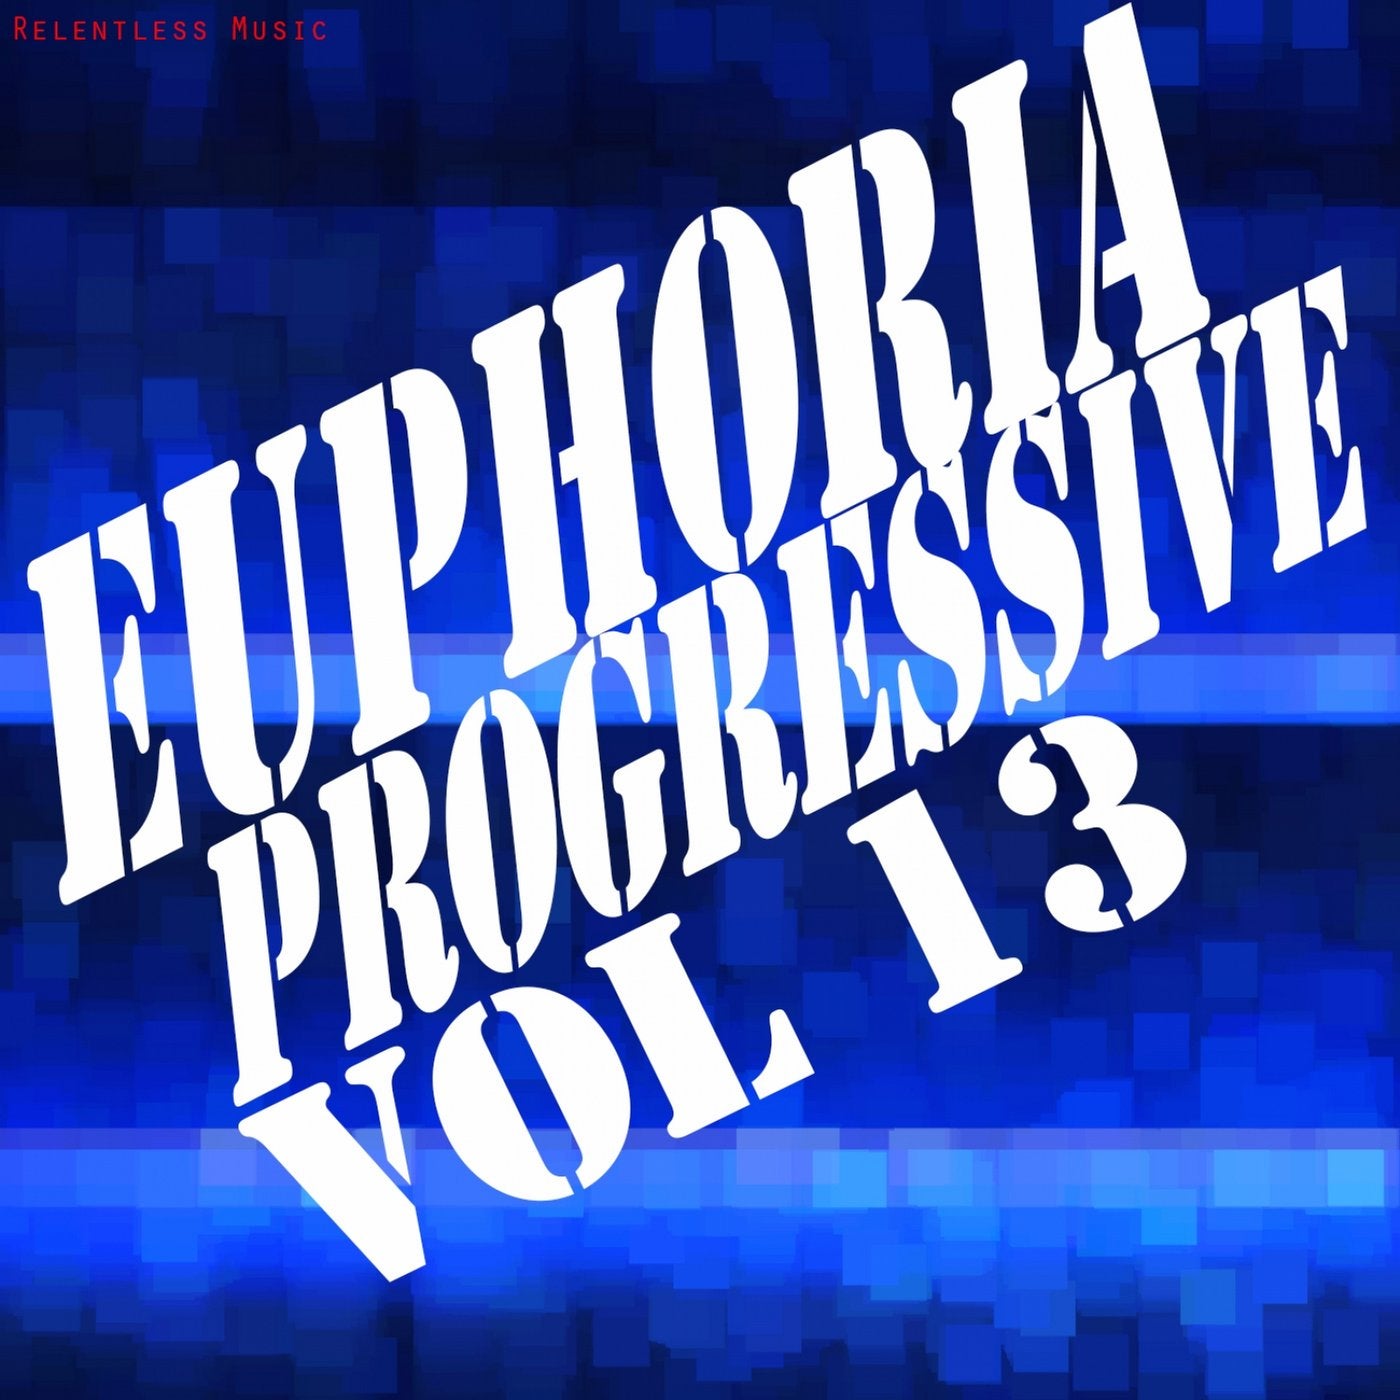 Euphoria Progressive, Vol. 13